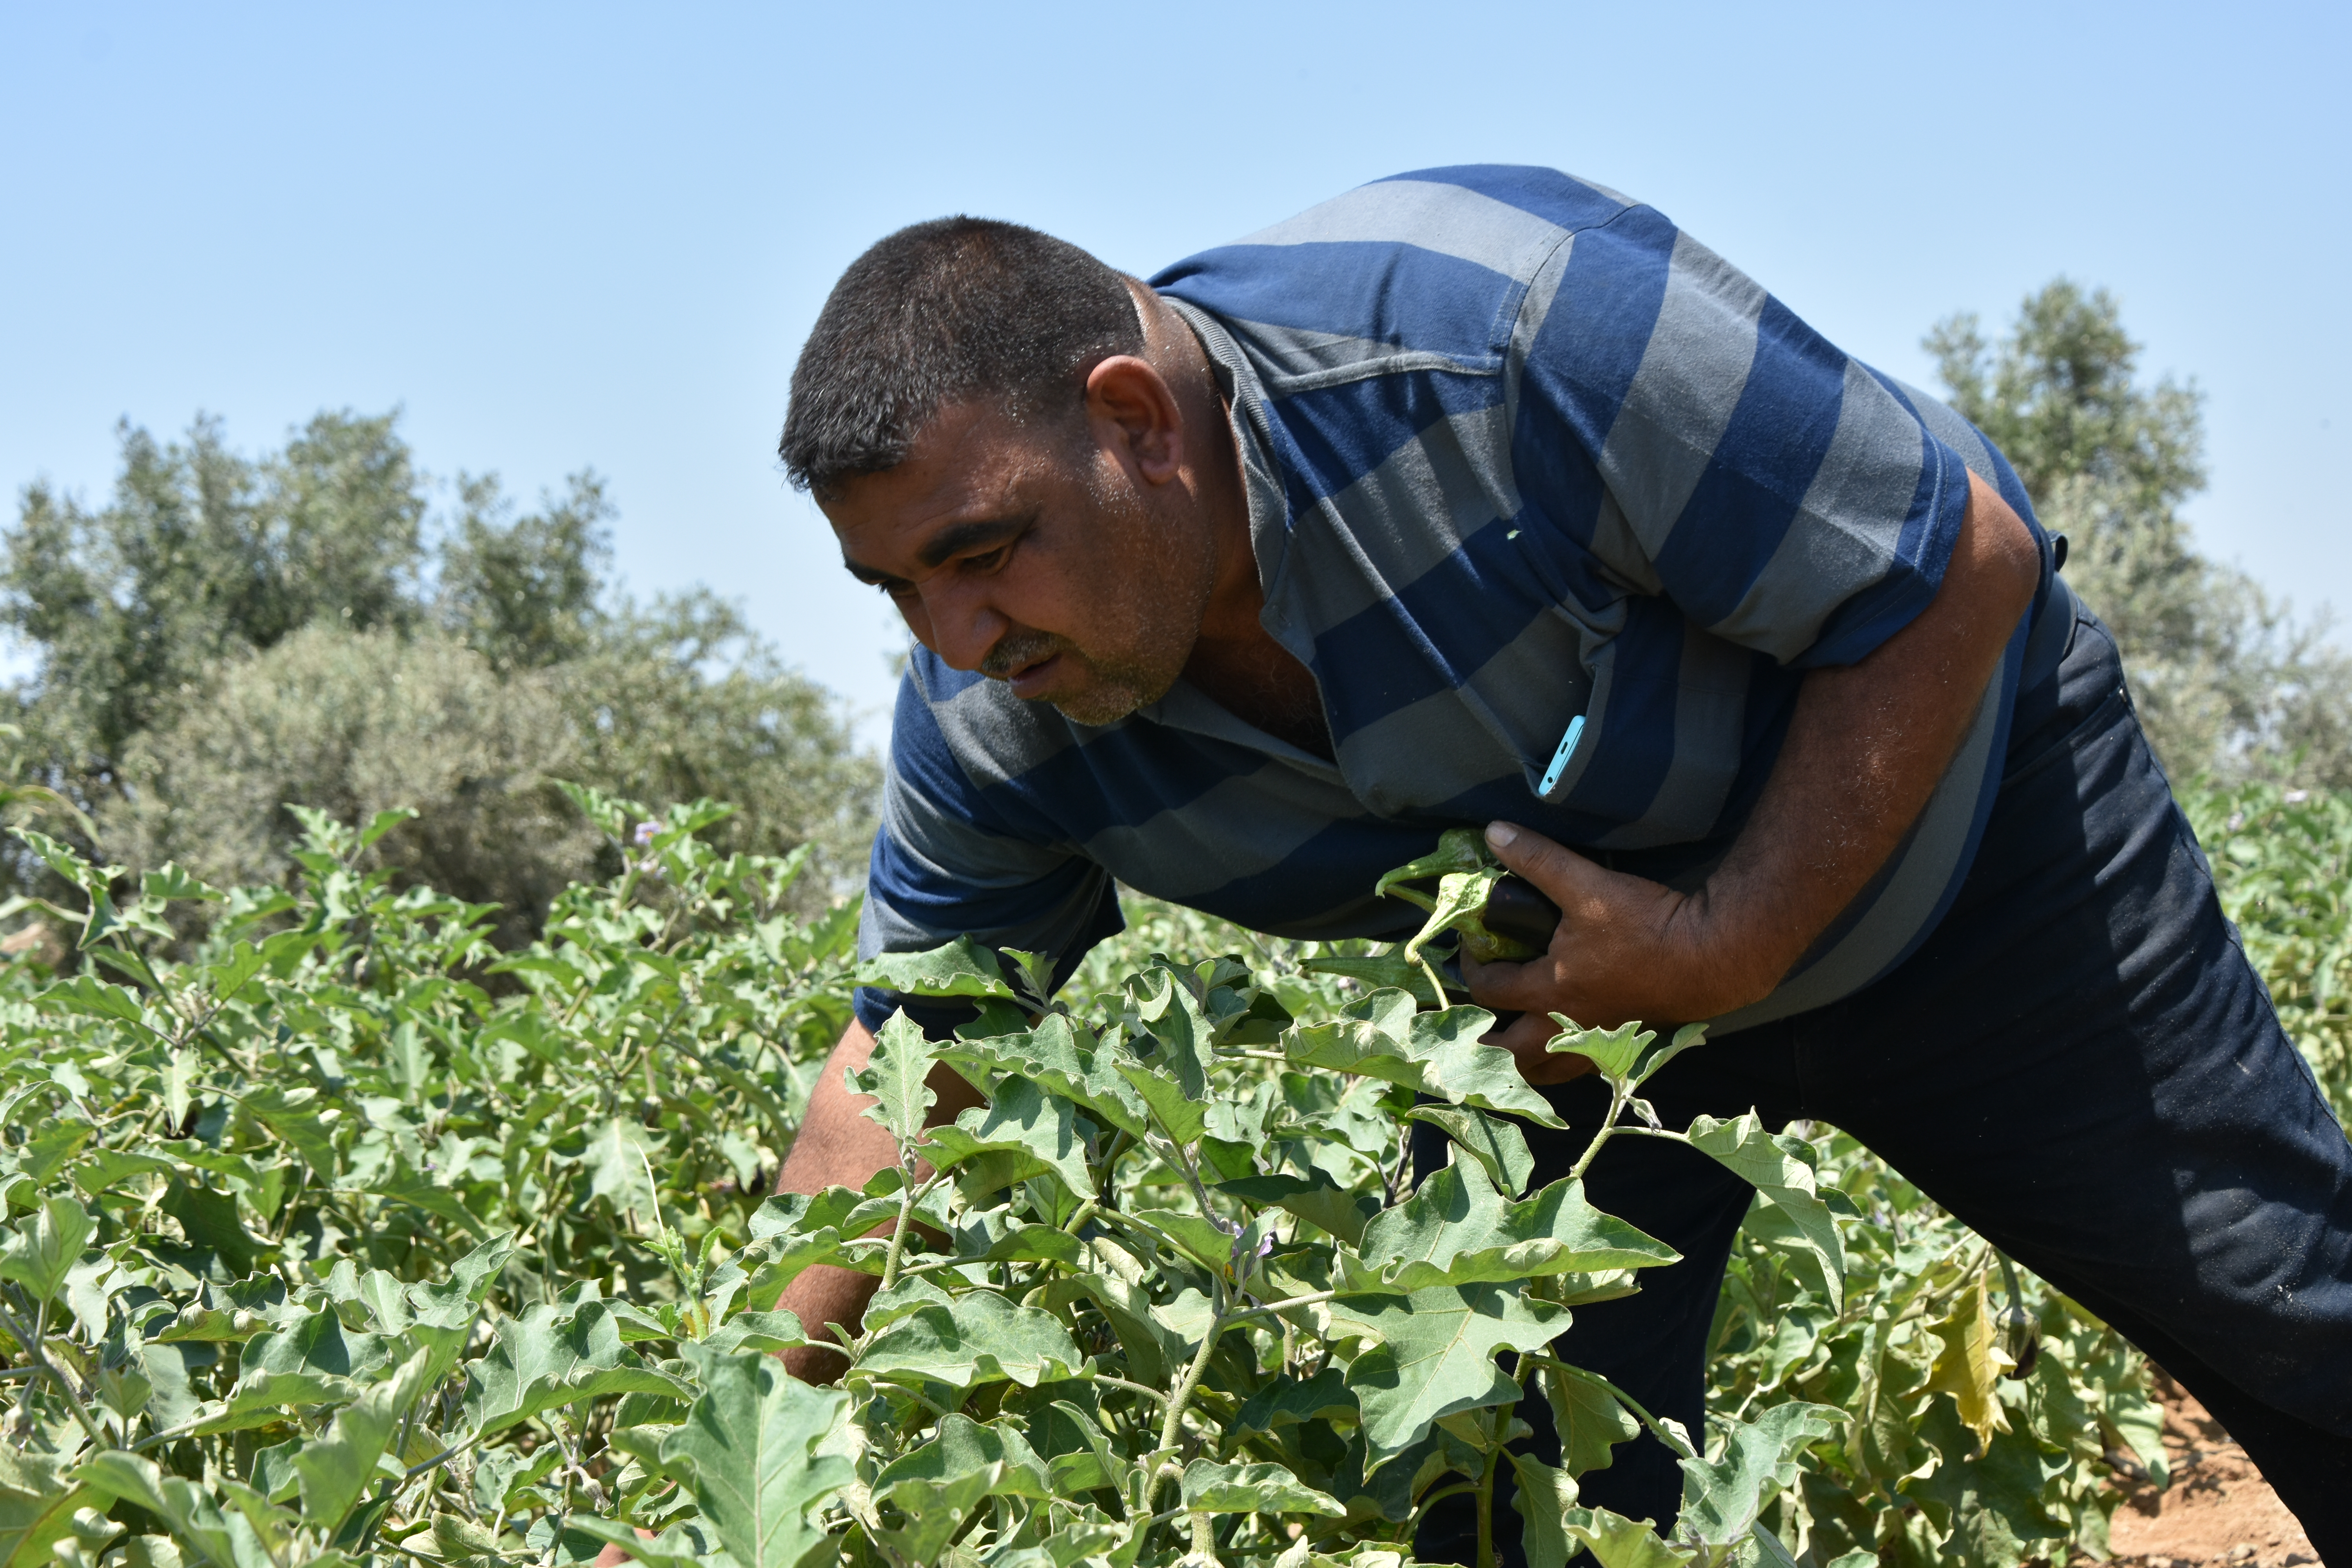 أحمد البدوي يحصد محصول الباذنجان، أيار/مايو 2019. تصوير: اتحاد لجان العمل الزراعي